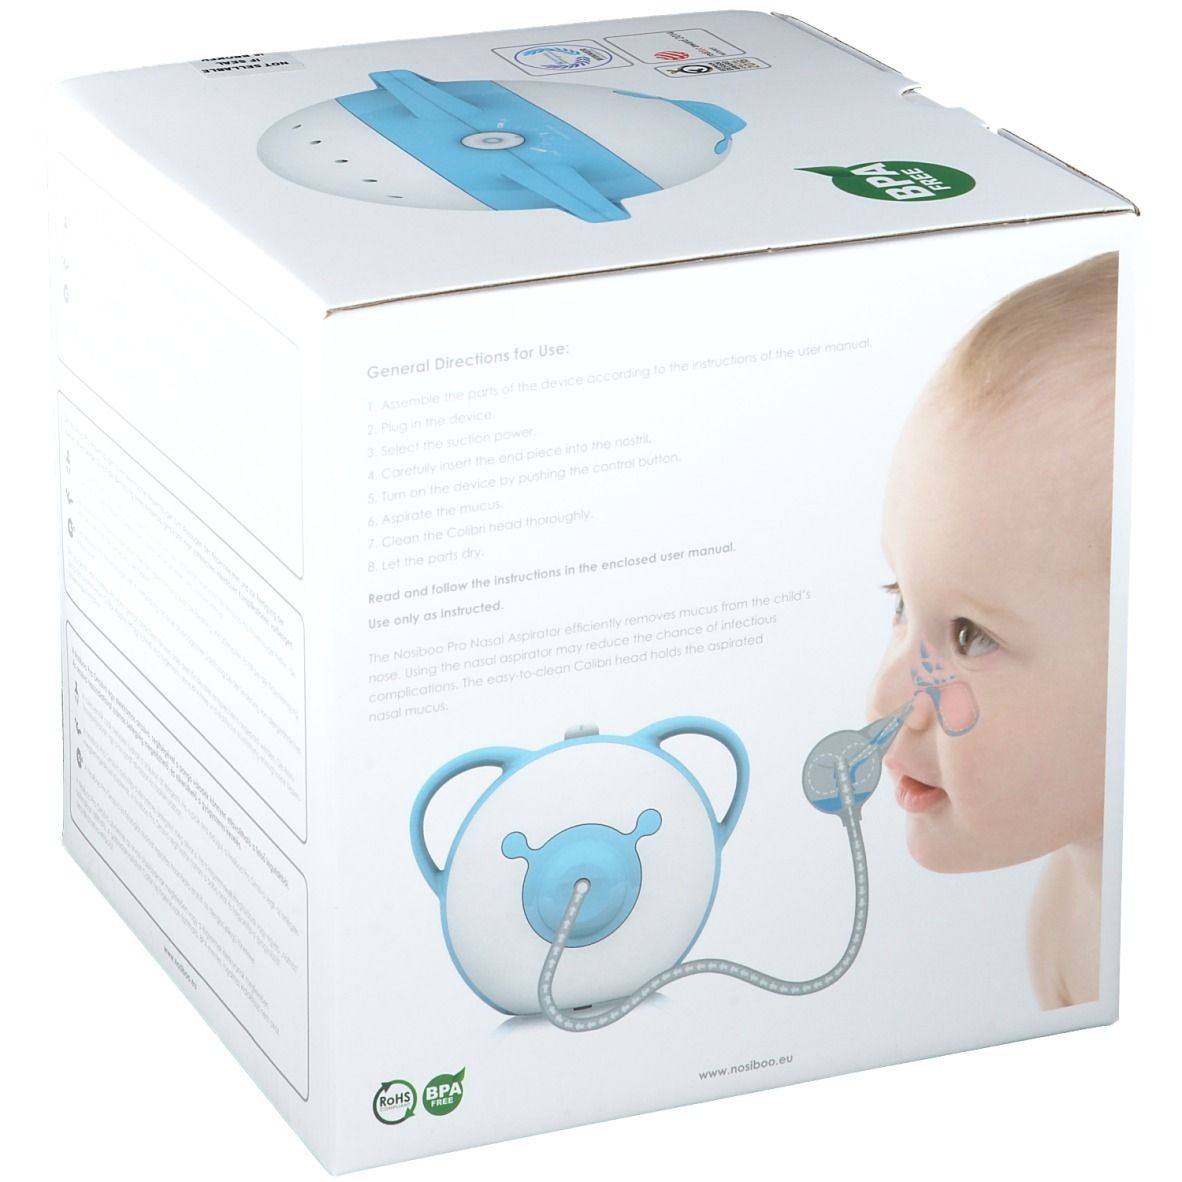 Nosiboo Pro Mouche-bébé électrique Vert 1 pc(s) - Redcare Pharmacie